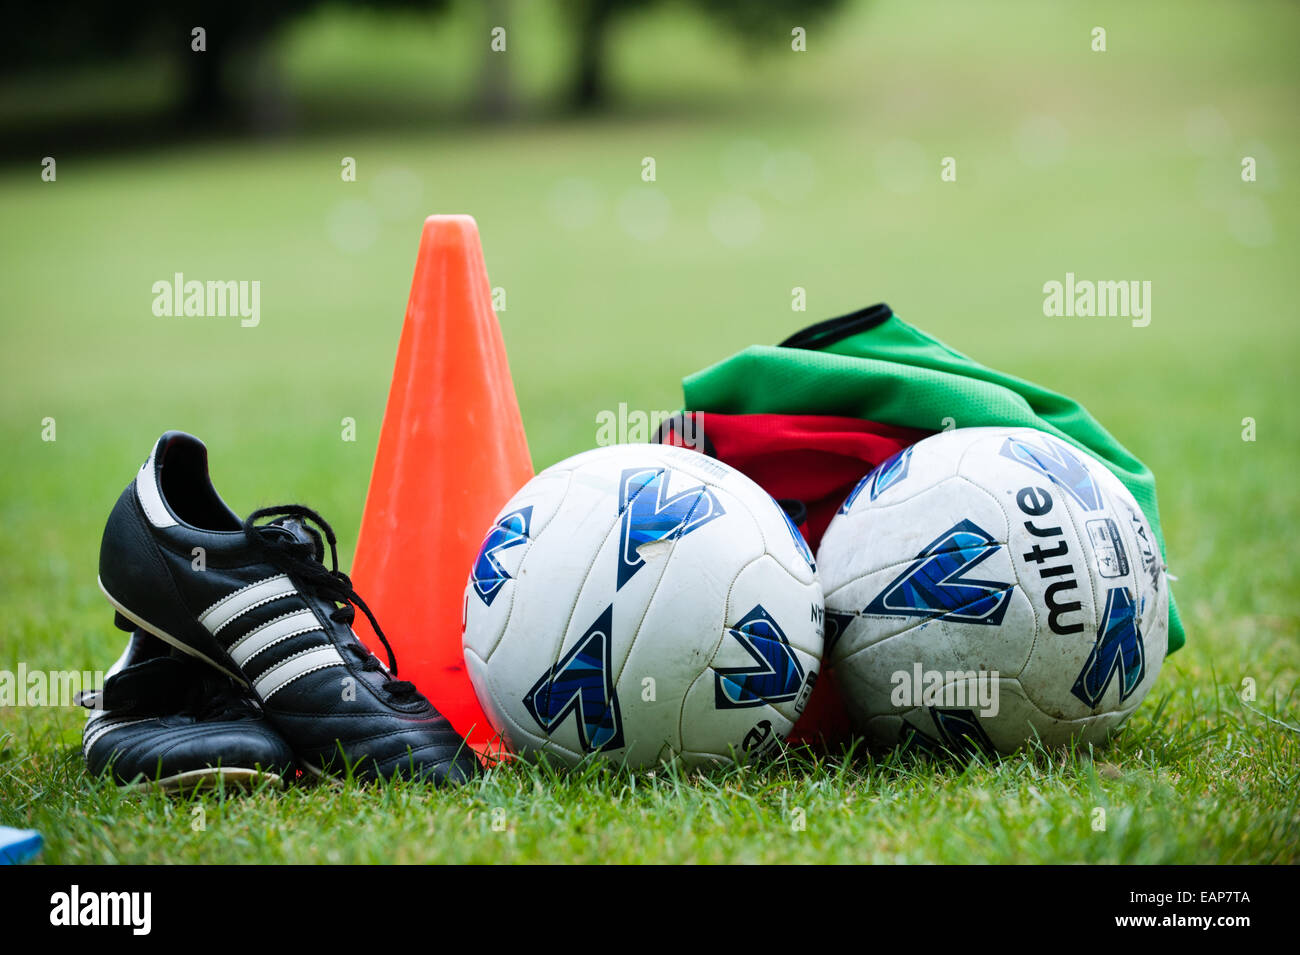 Fußballschuhe, einen roten Kegel, zwei Fußbälle und grünen und roten Tops auf dem Rasen wartet ein Ferien-Fußball-coaching-Kurs Stockfoto